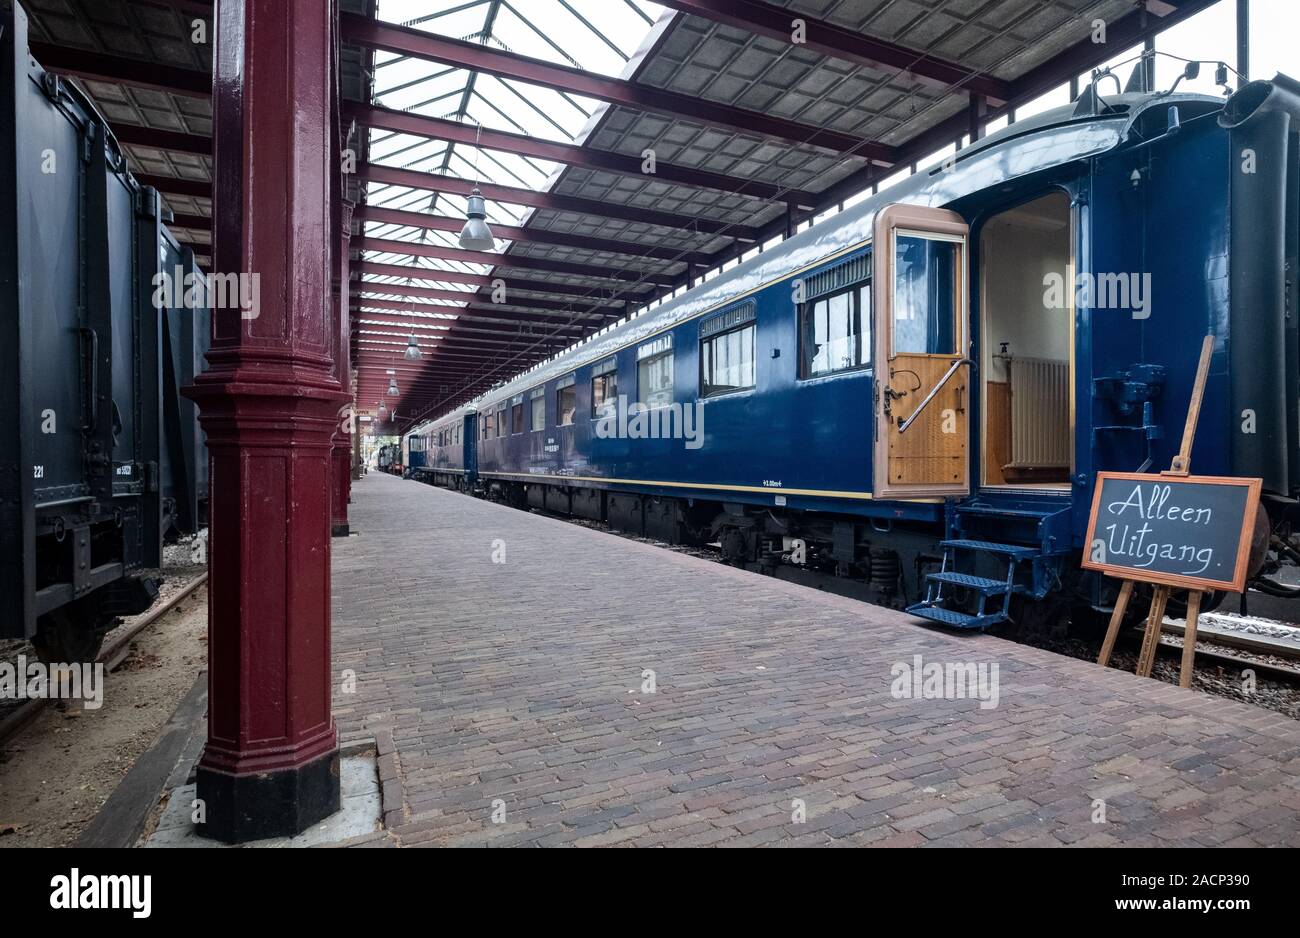 Trainmuseum Utrecht Paesi Bassi. Un sacco di treni storici, possibilità interattive e si trova in una storica stazione ferroviaria. Foto Stock